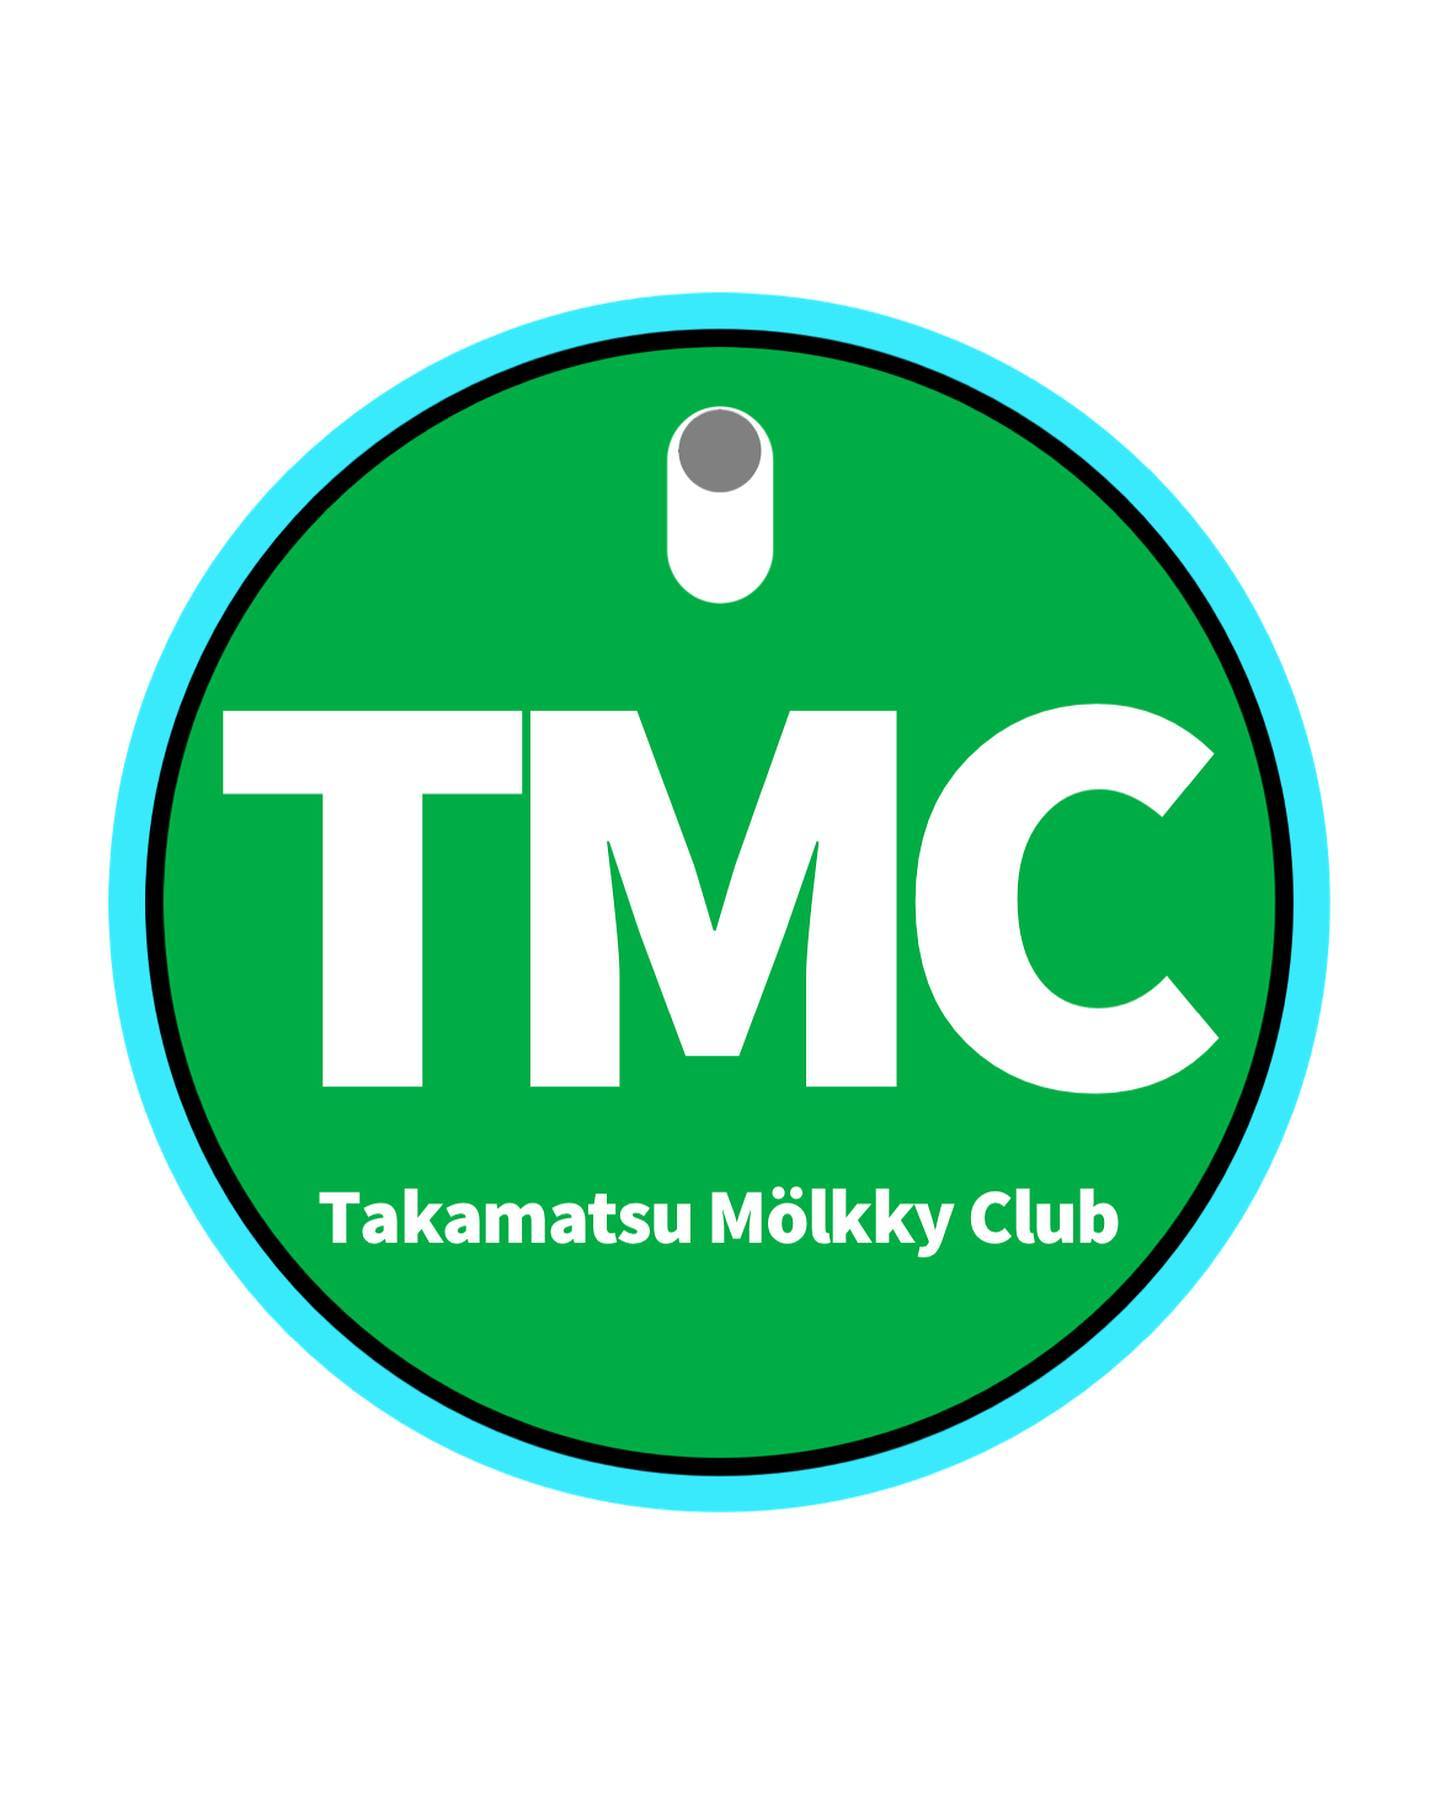 Takamatsu Mölkky Club